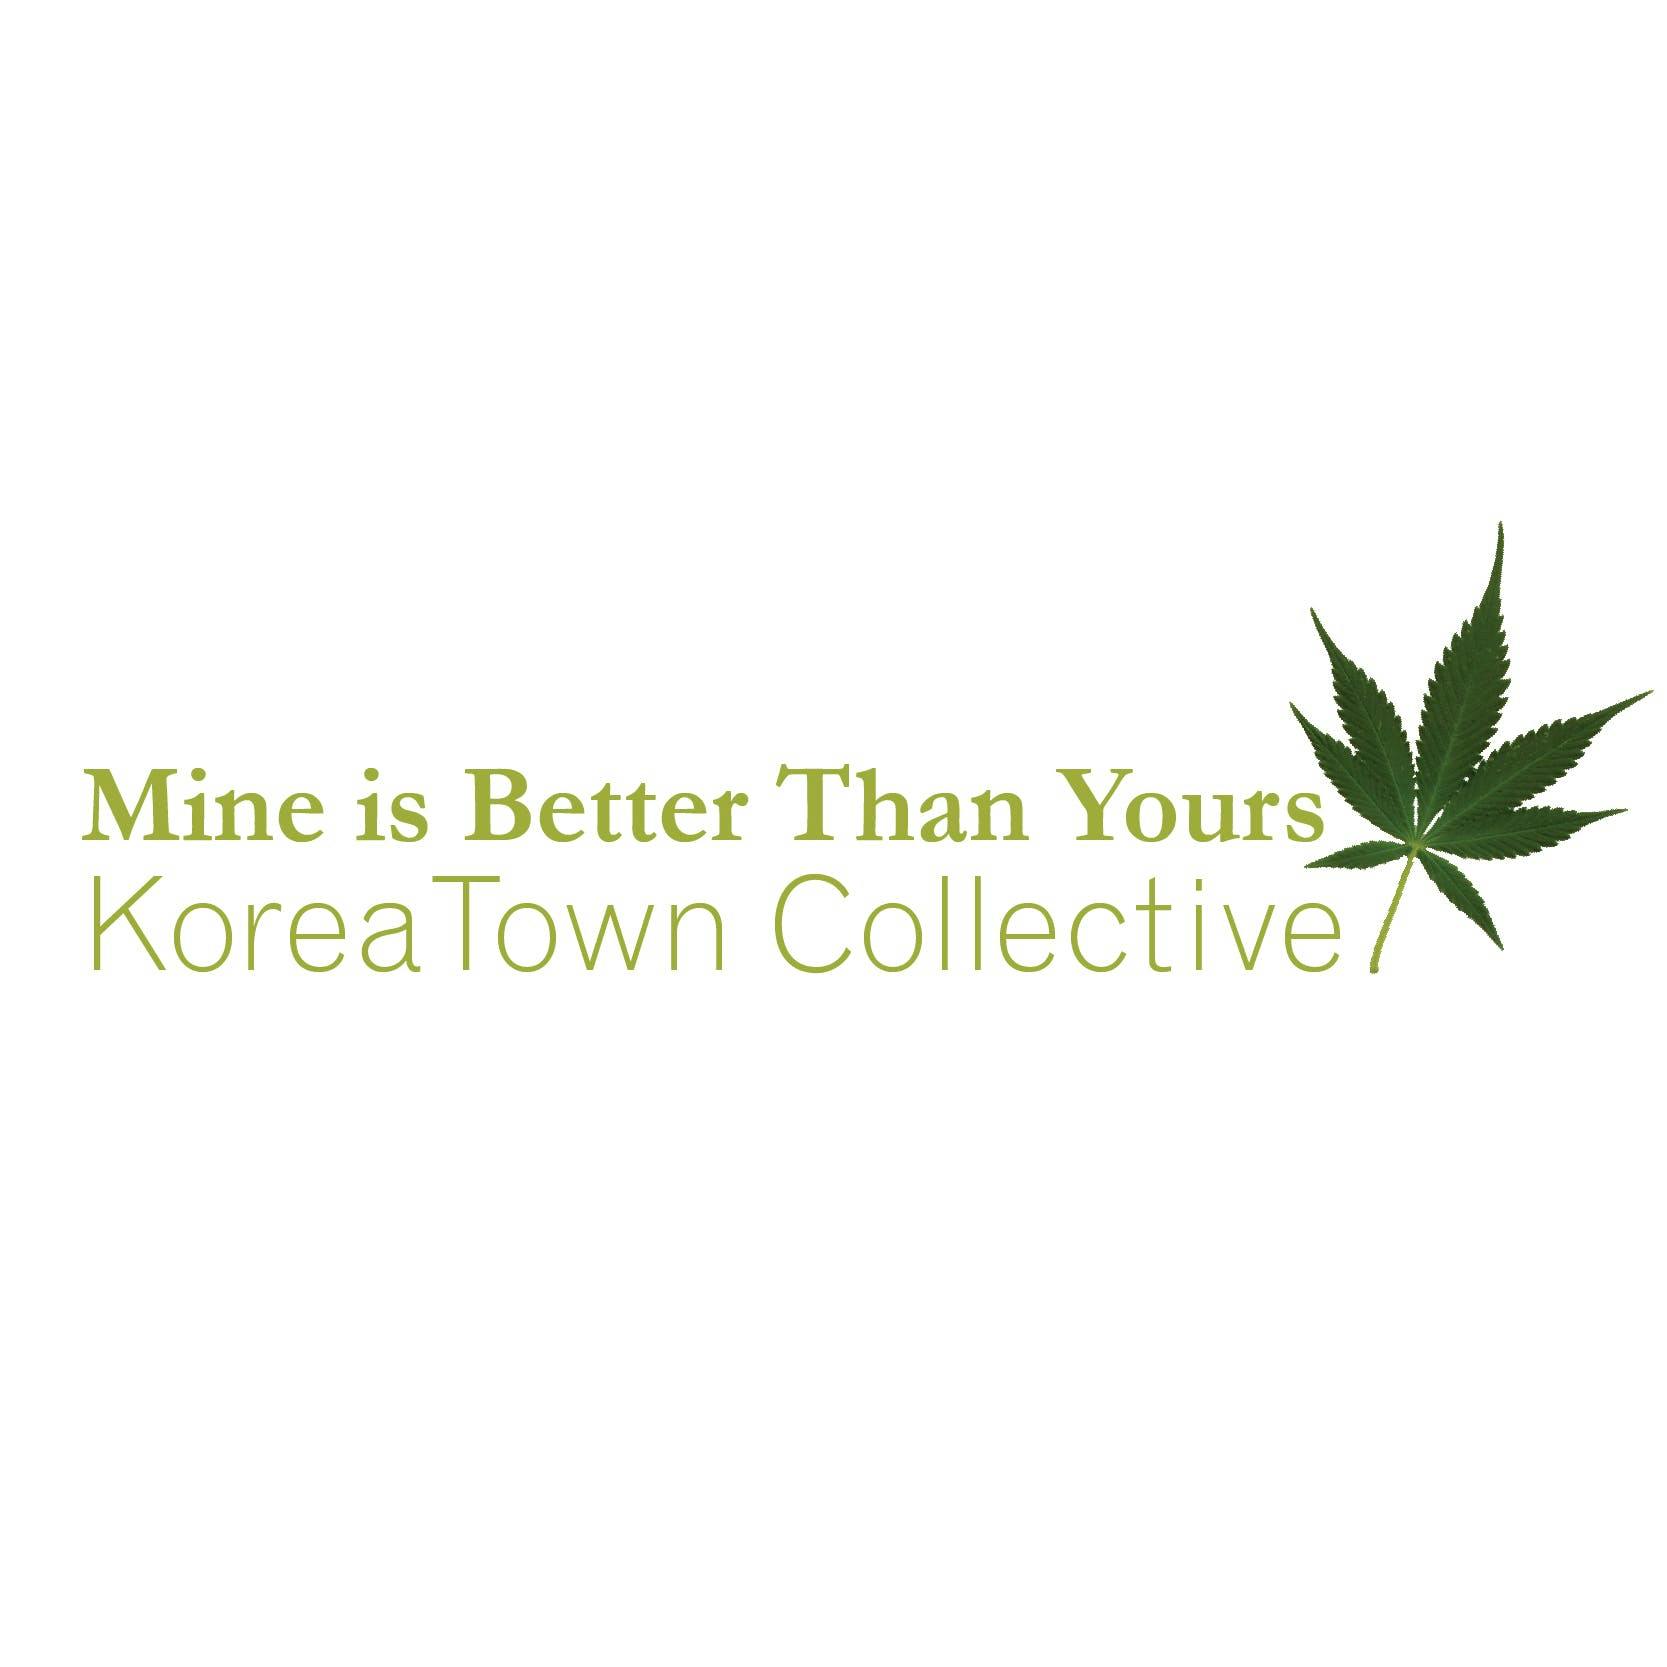 Korea Town Collective